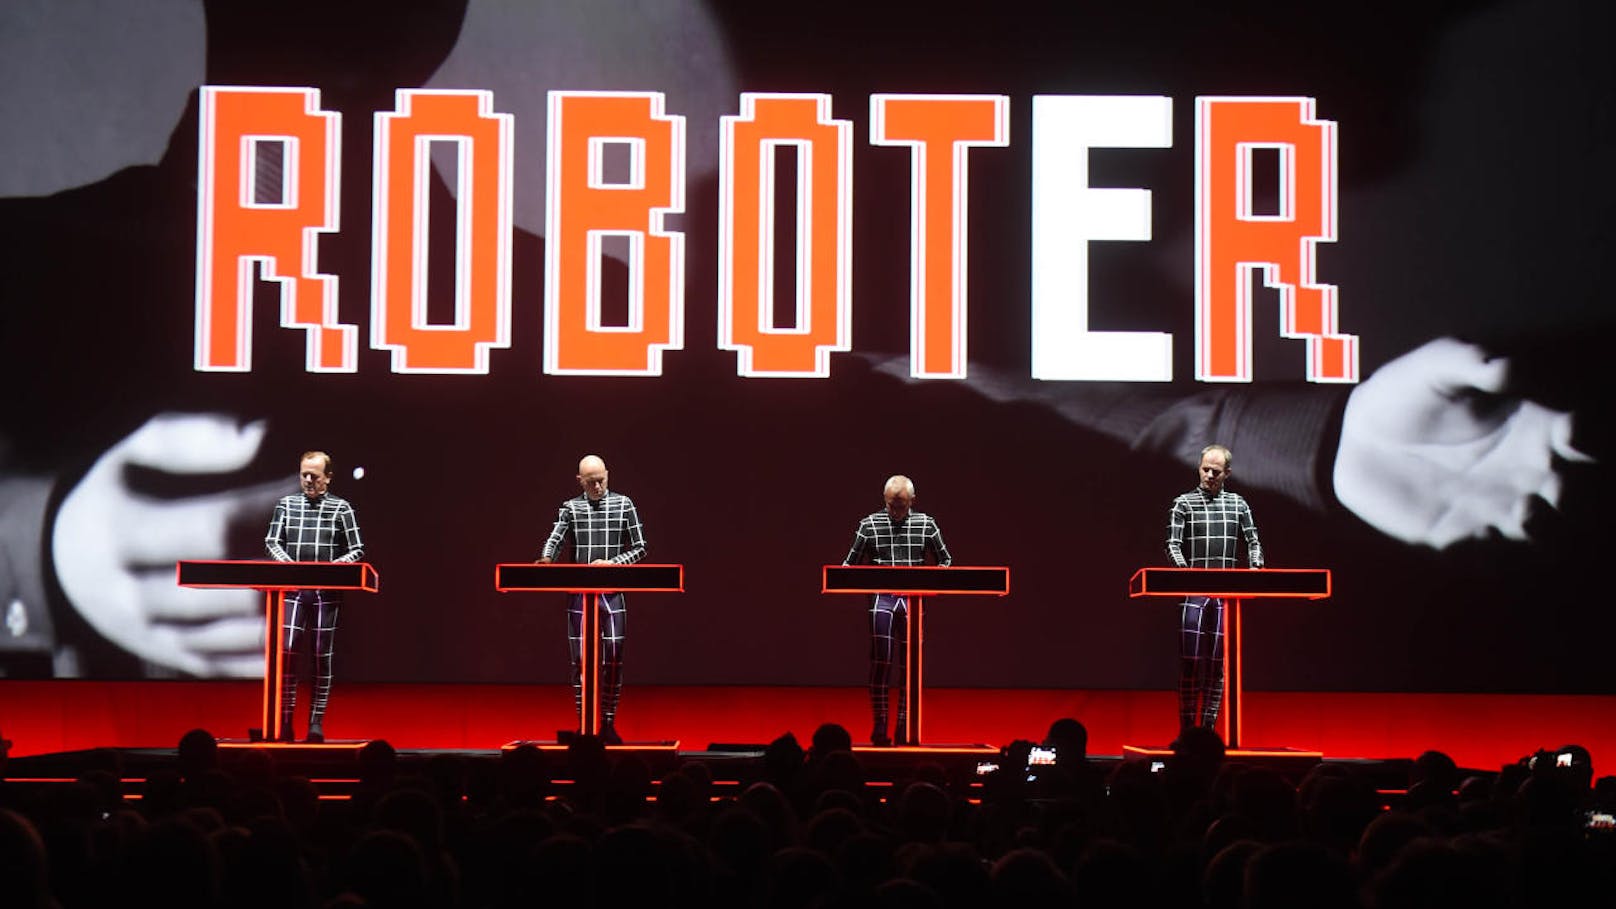 Die Roboter kommen: Am 6. Juli spielen Kraftwerk im Ehrenhof des Schloss Schönbrunn.